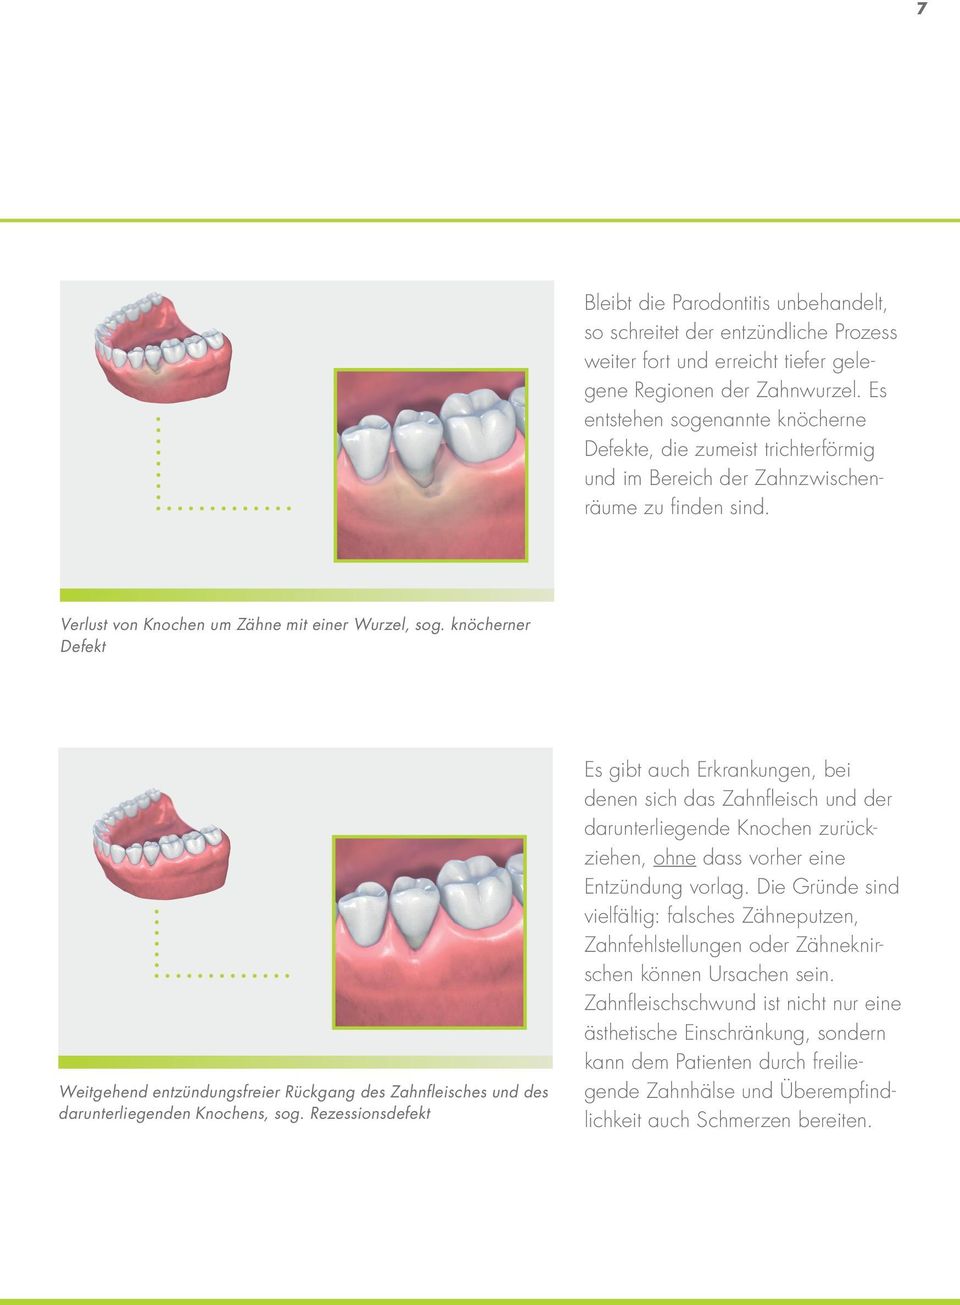 knöcherner Defekt Weitgehend entzündungsfreier Rückgang des Zahnfleisches und des darunterliegenden Knochens, sog.